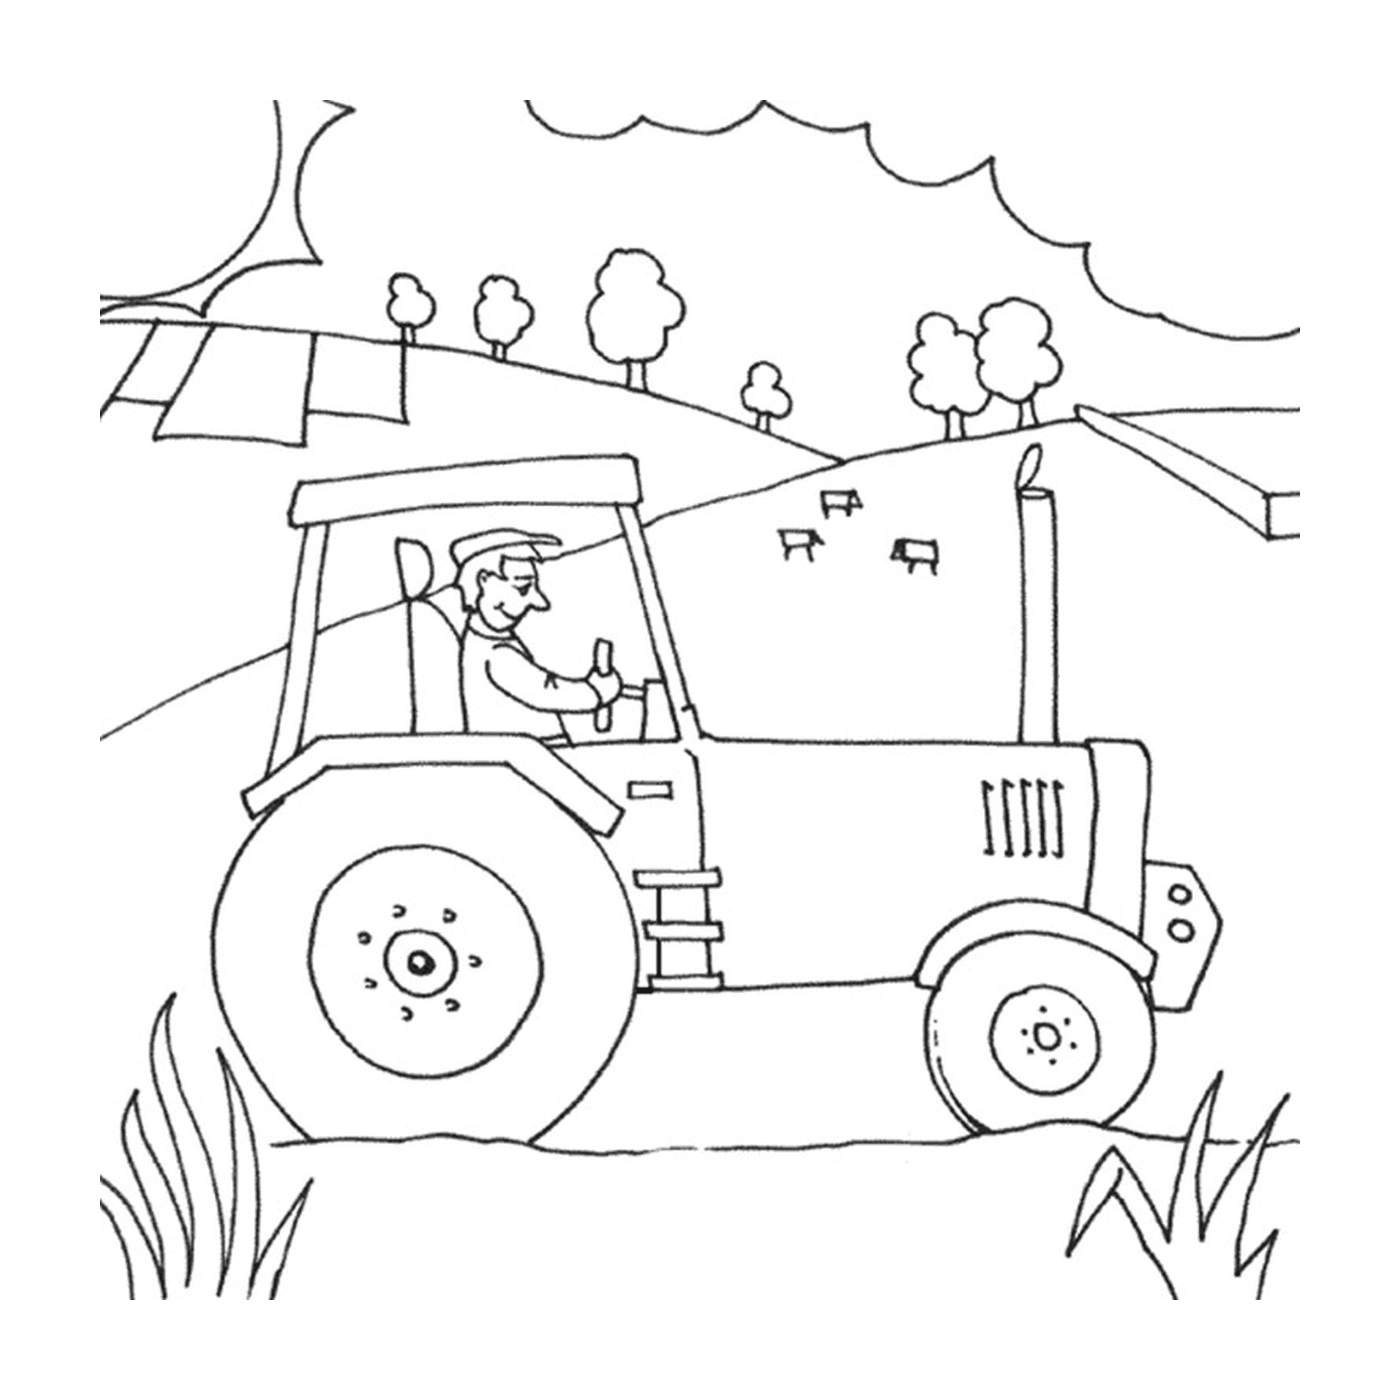   Ferme avec tracteur, vie rurale active 